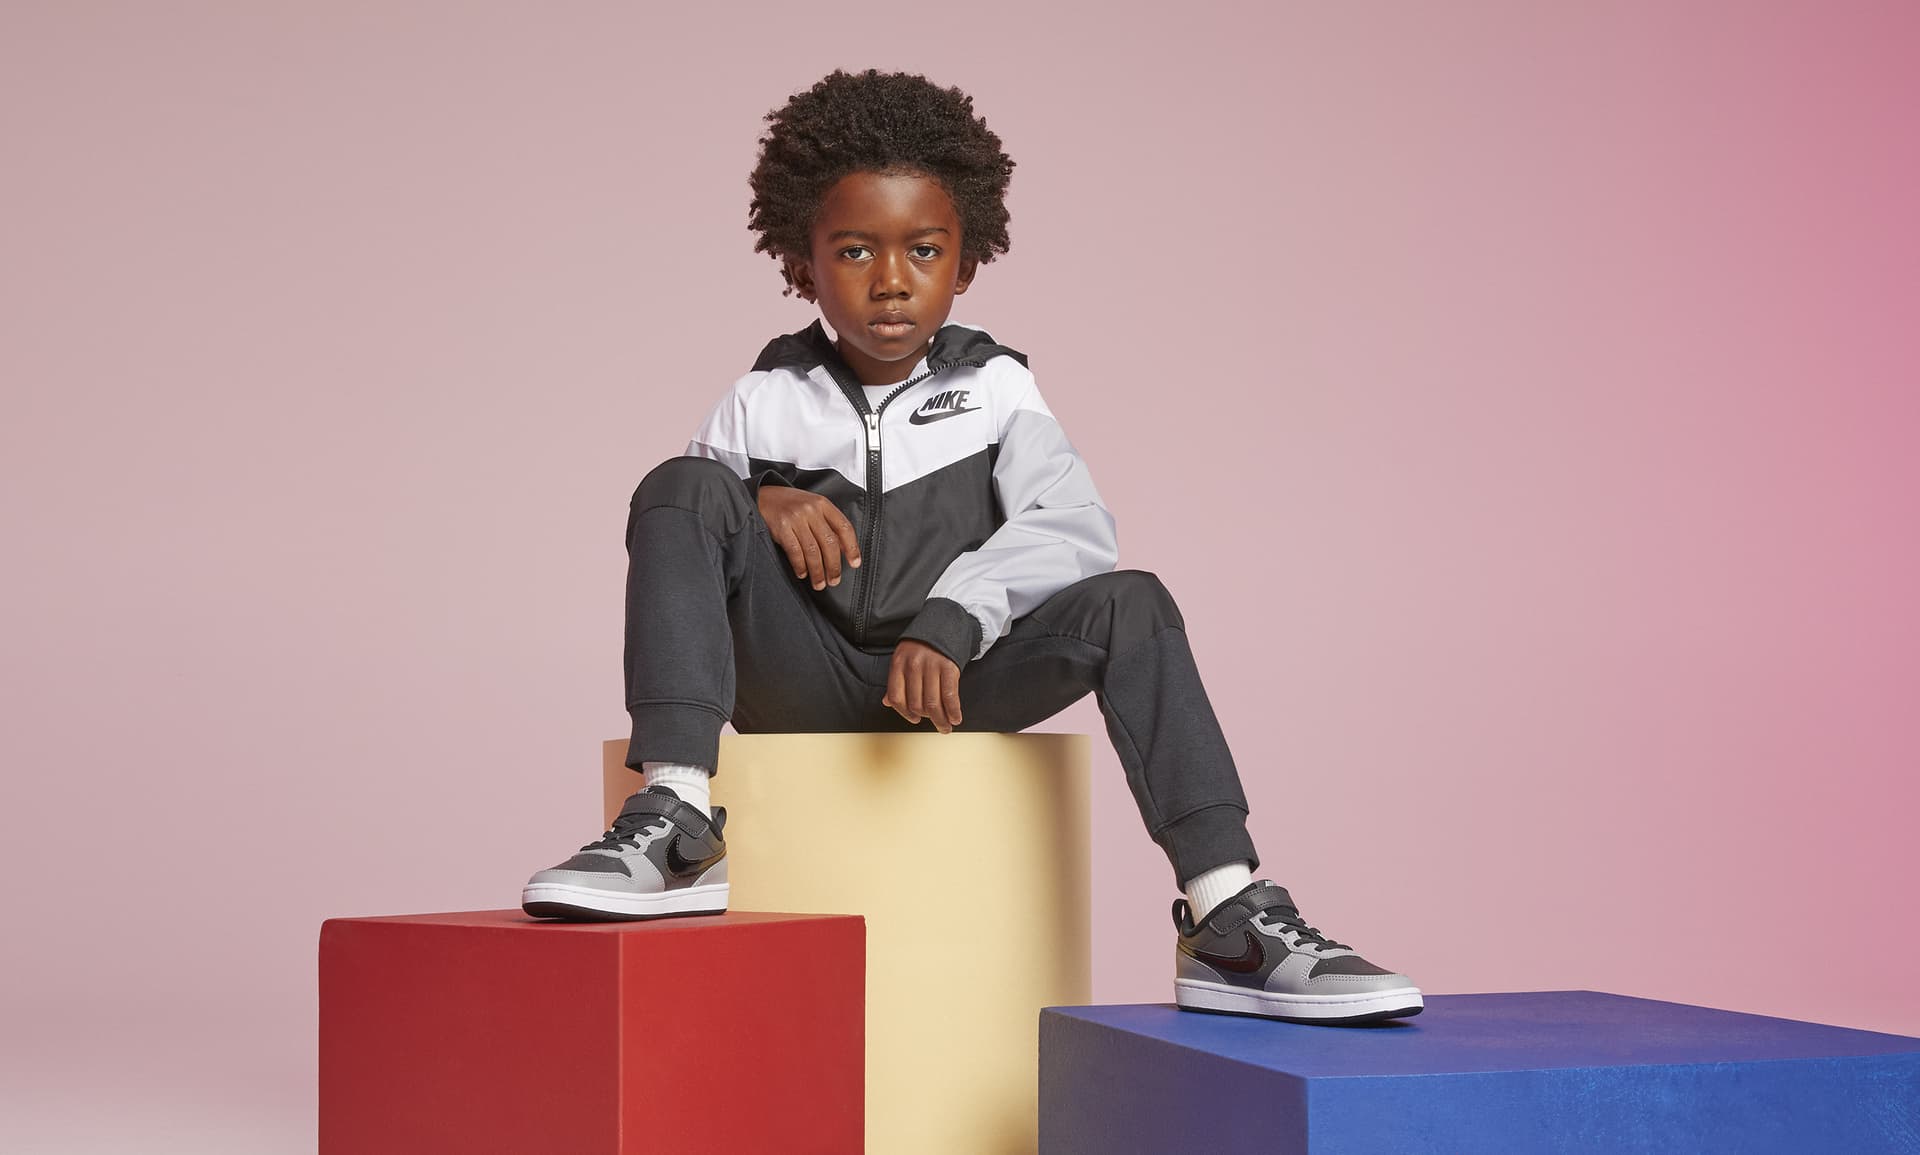 Borough Low 2 Little Kids' Shoes. Nike.com